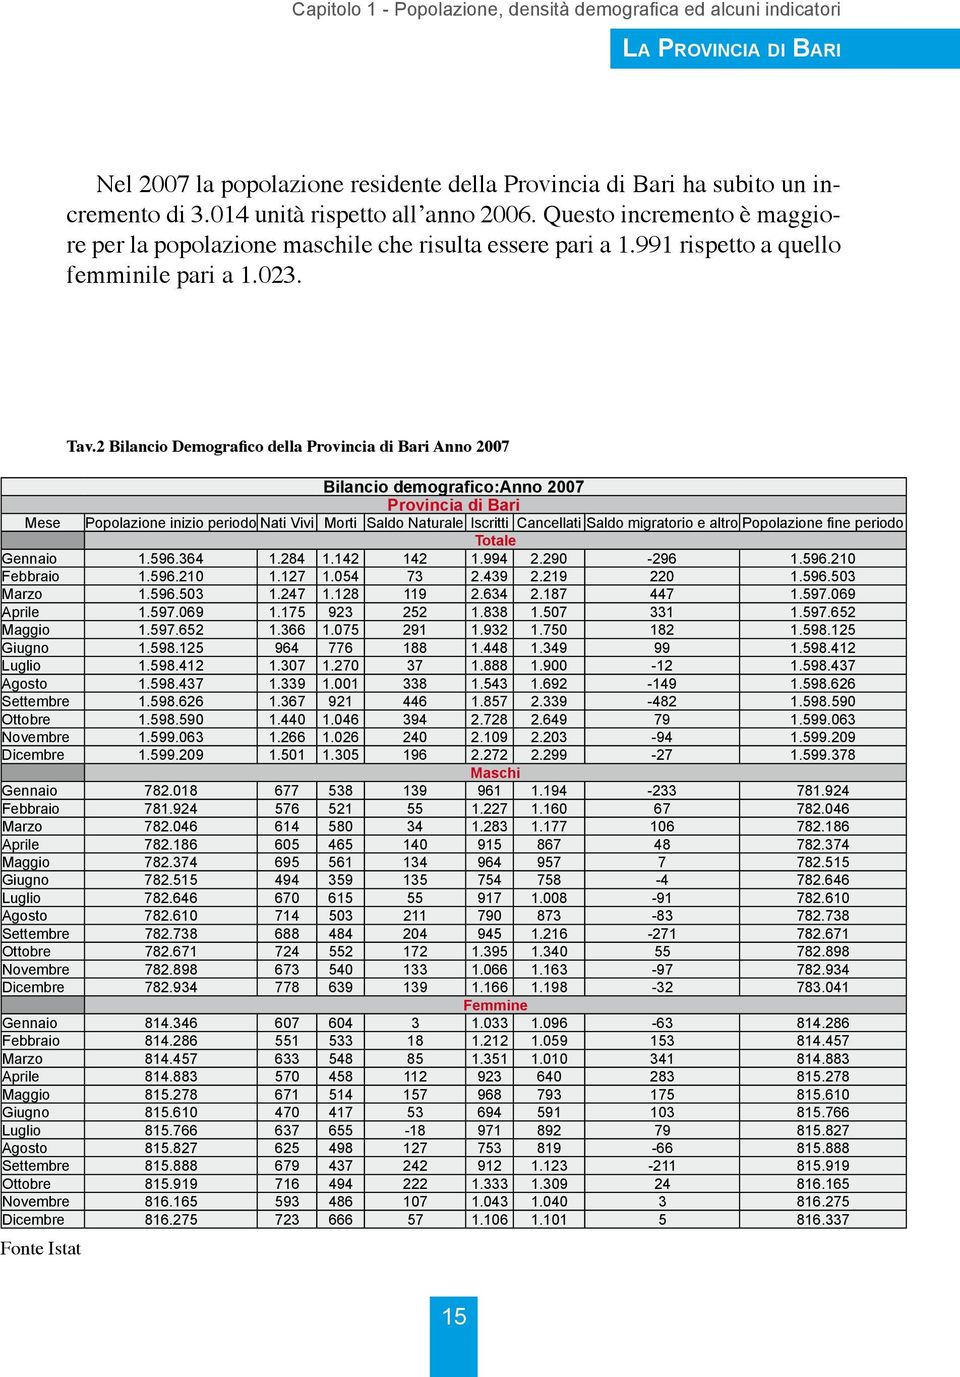 2 Bilancio Demografico della Provincia di Bari Anno 2007 Bilancio demografico:anno 2007 Provincia di Bari Mese Popolazione inizio periodo Nati Vivi Morti Saldo Naturale Iscritti Cancellati Saldo